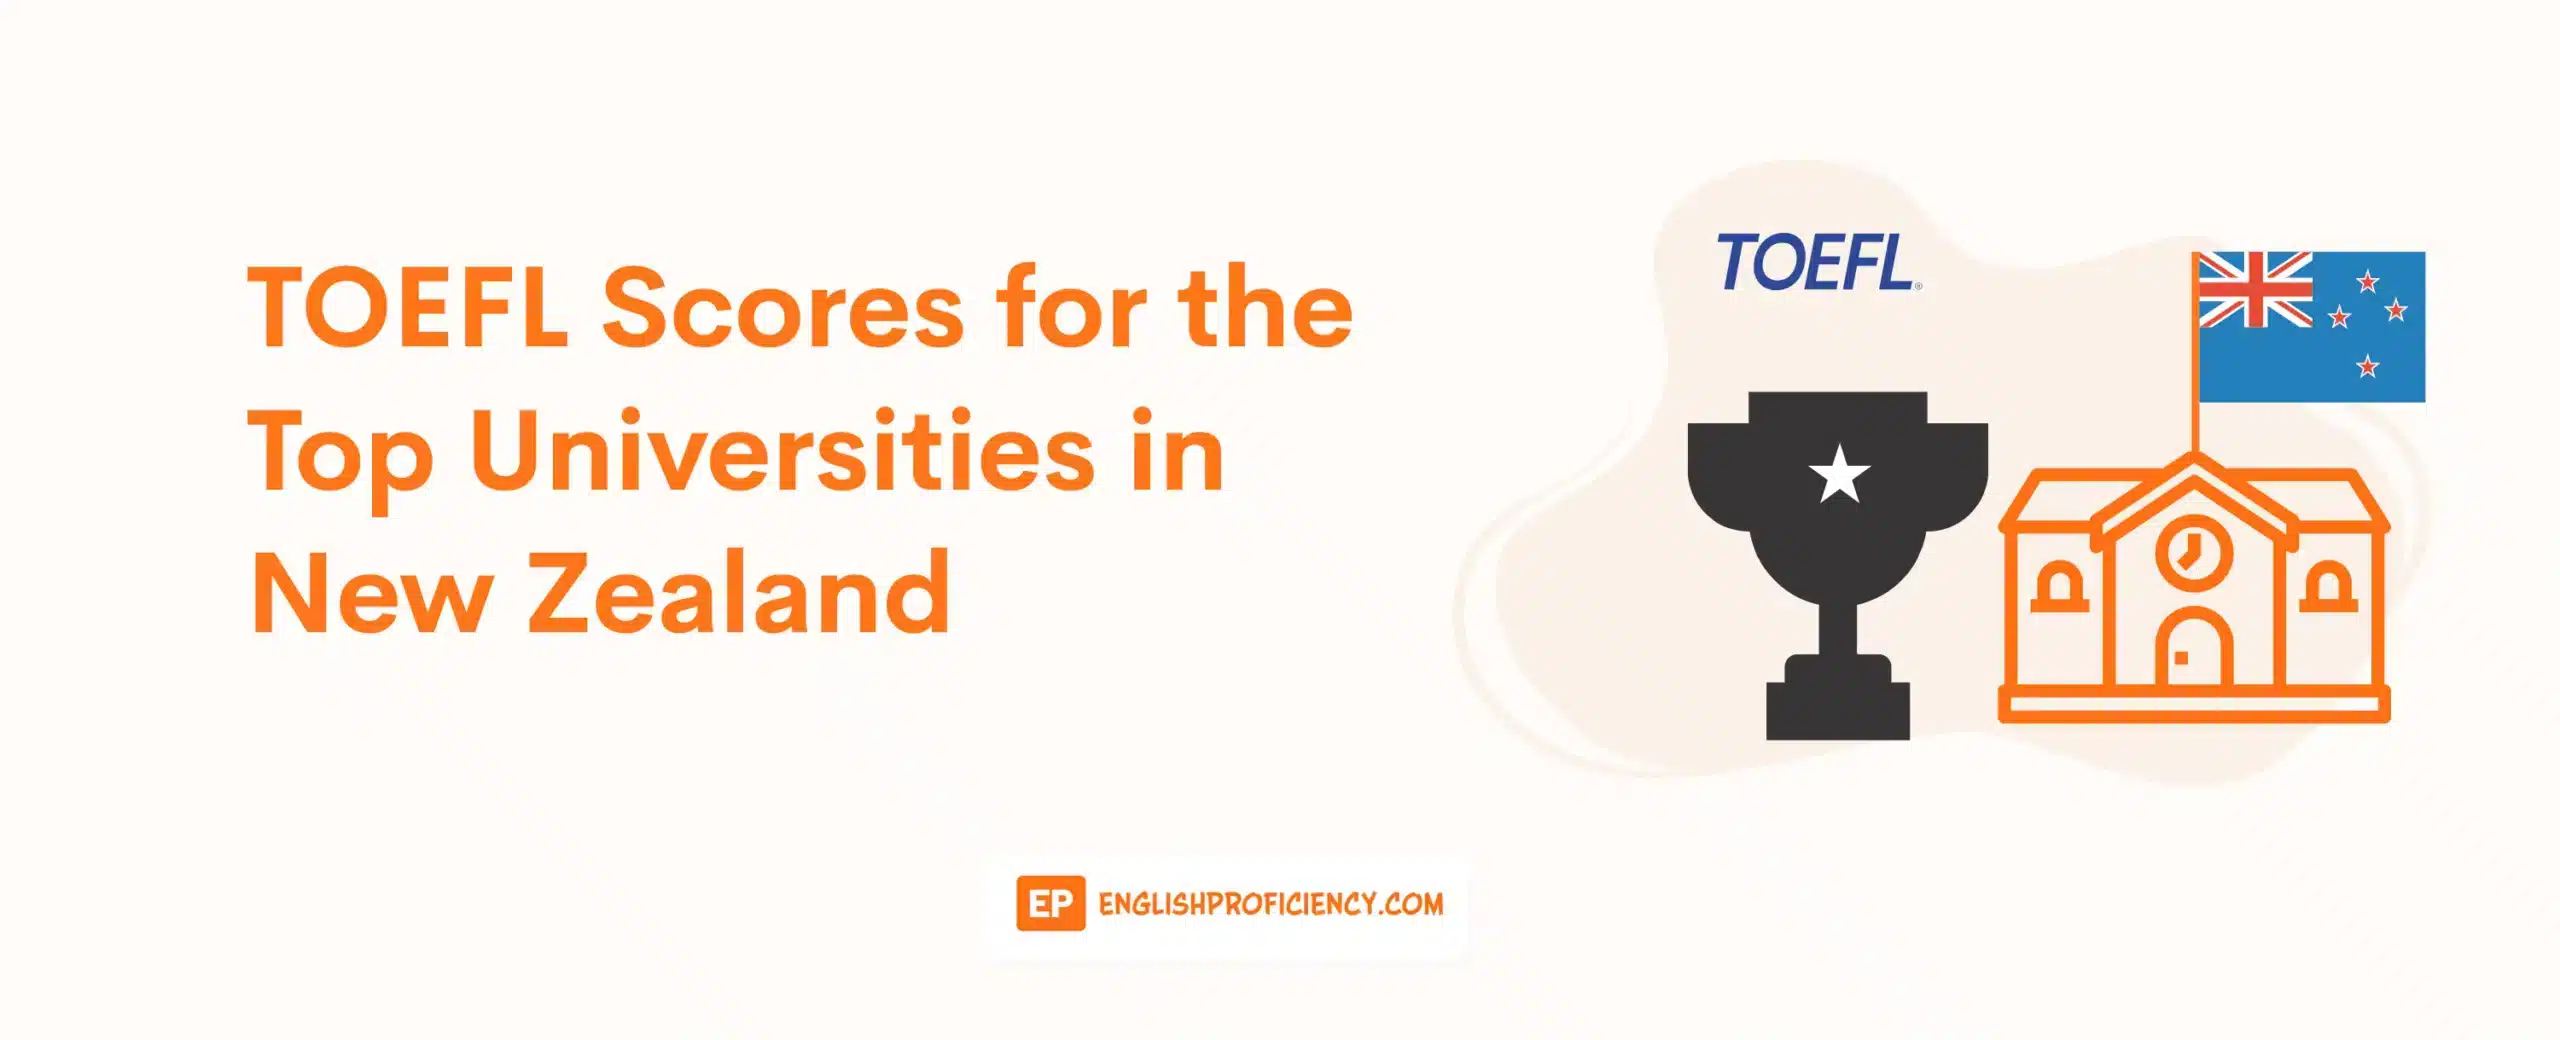 TOEFL Scores for the Top Universities in New Zealand